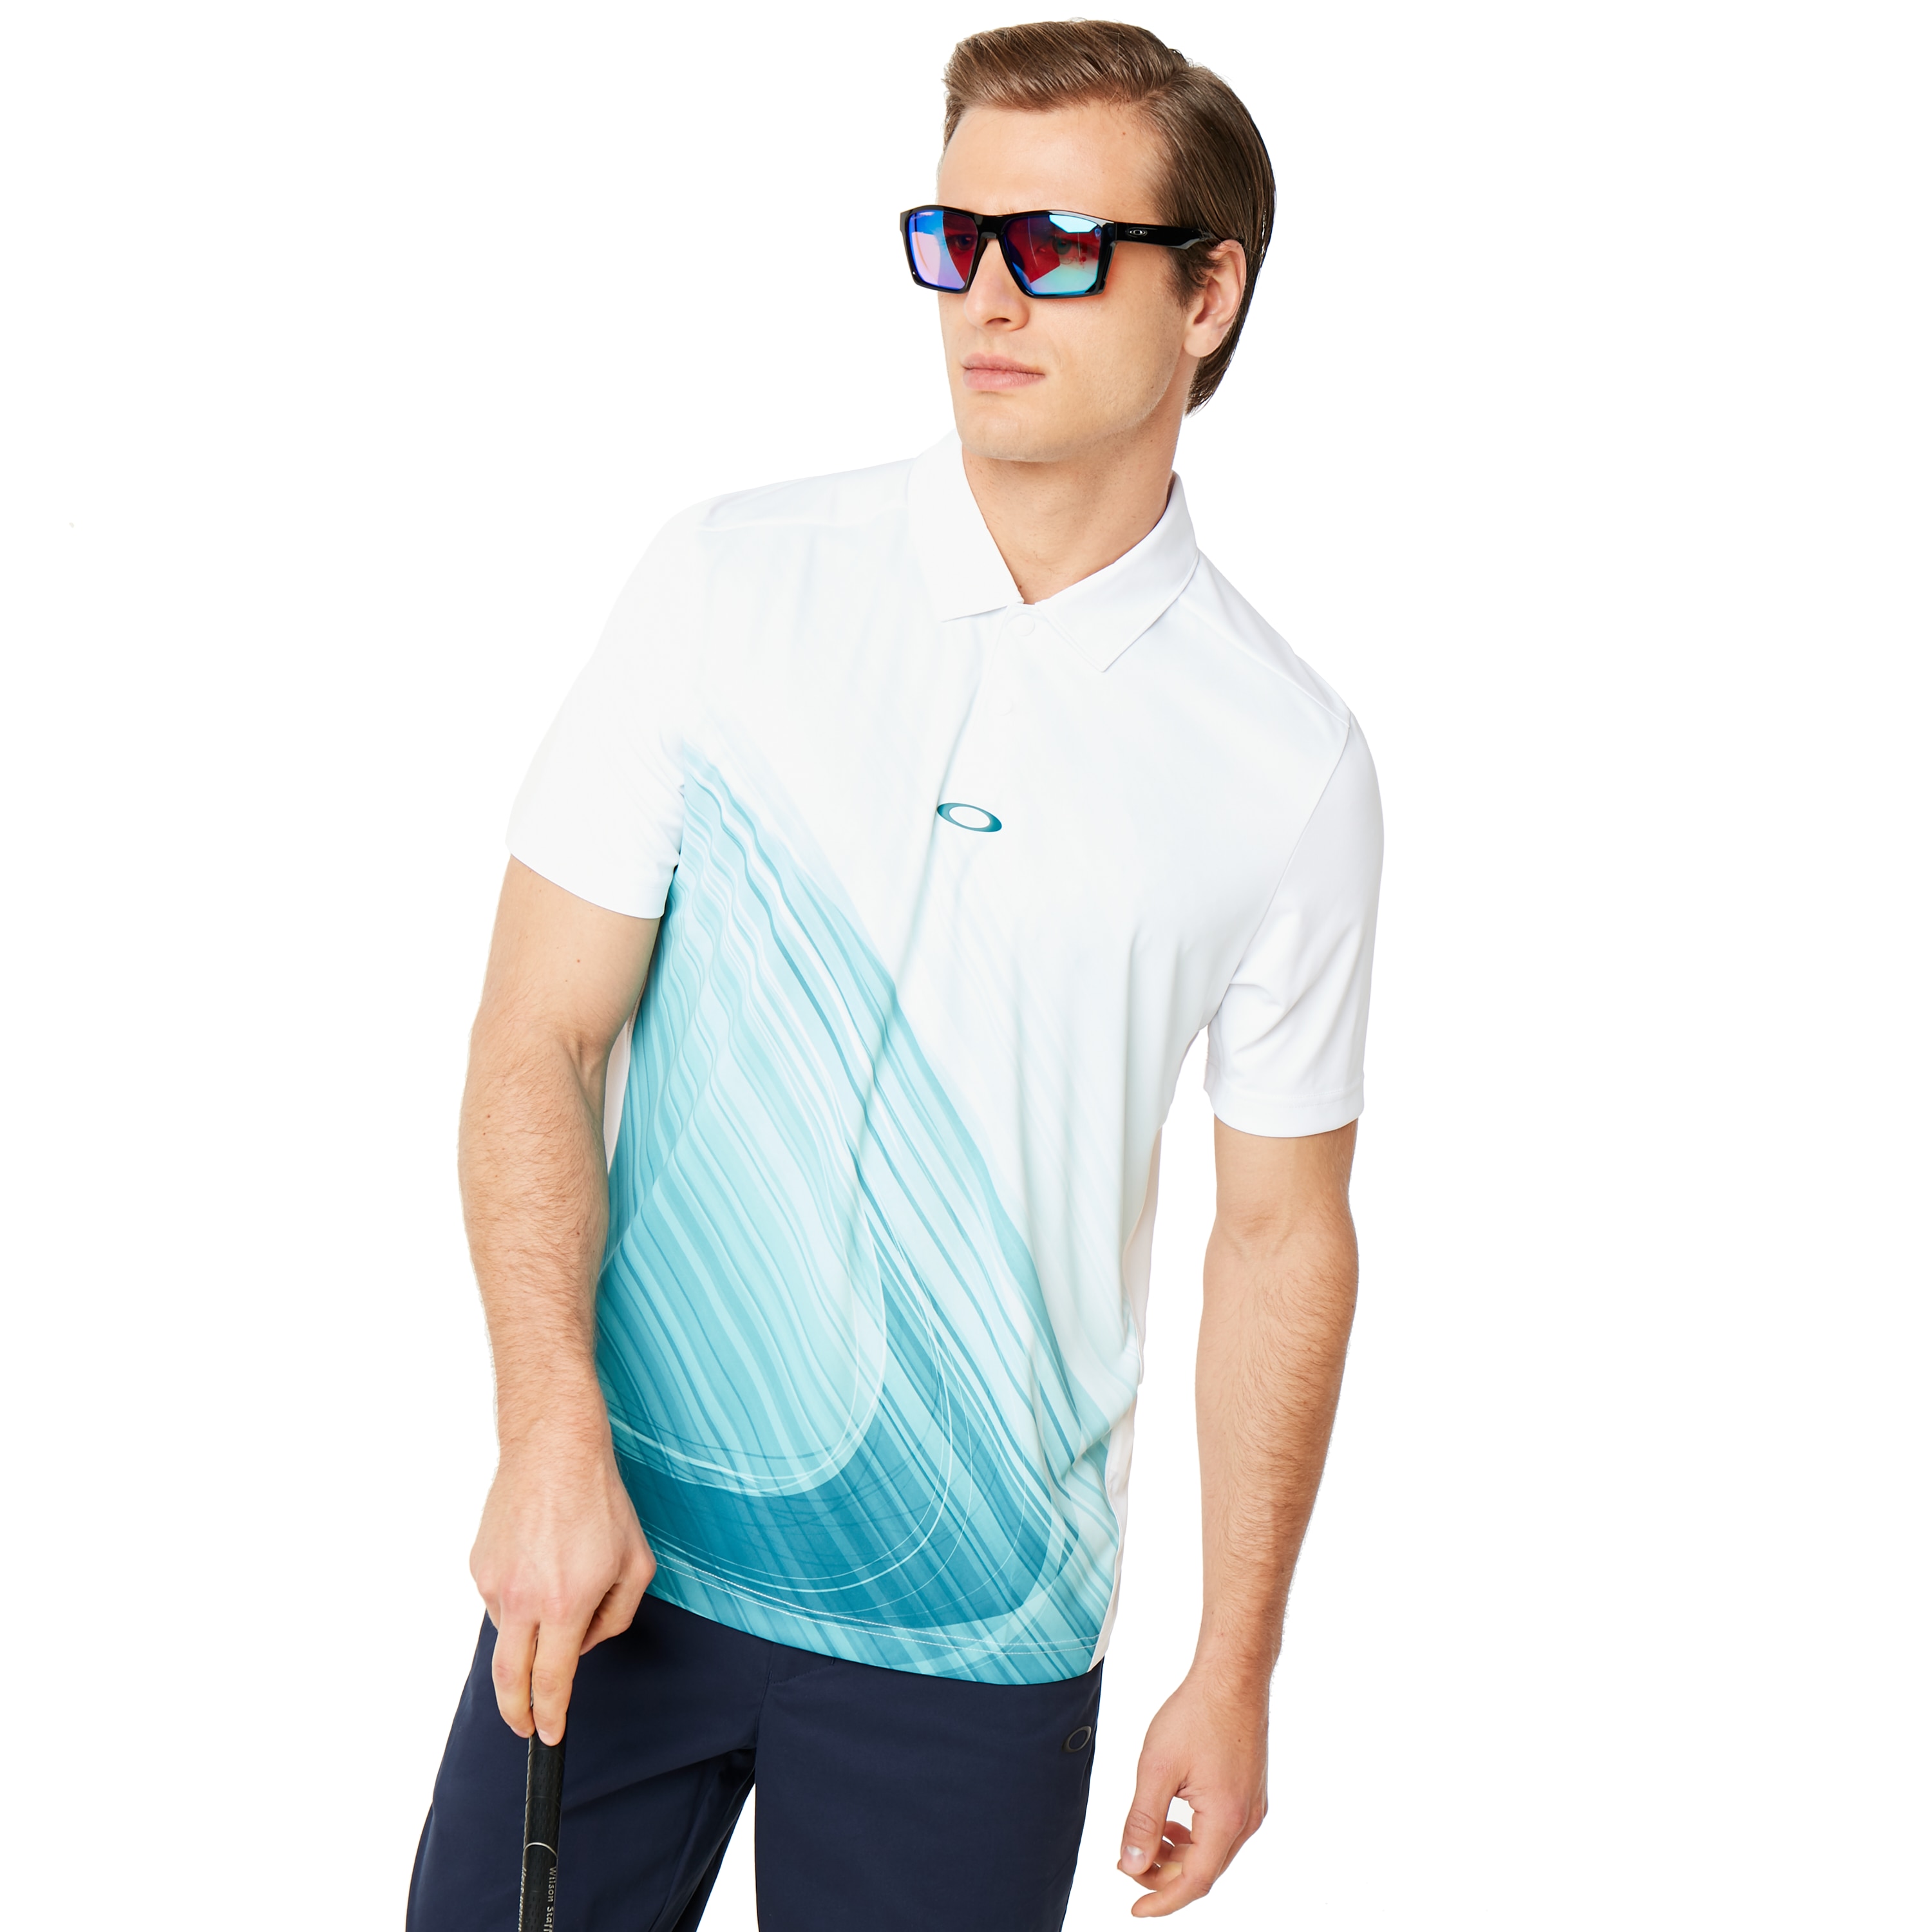 oakley golf shirts australia